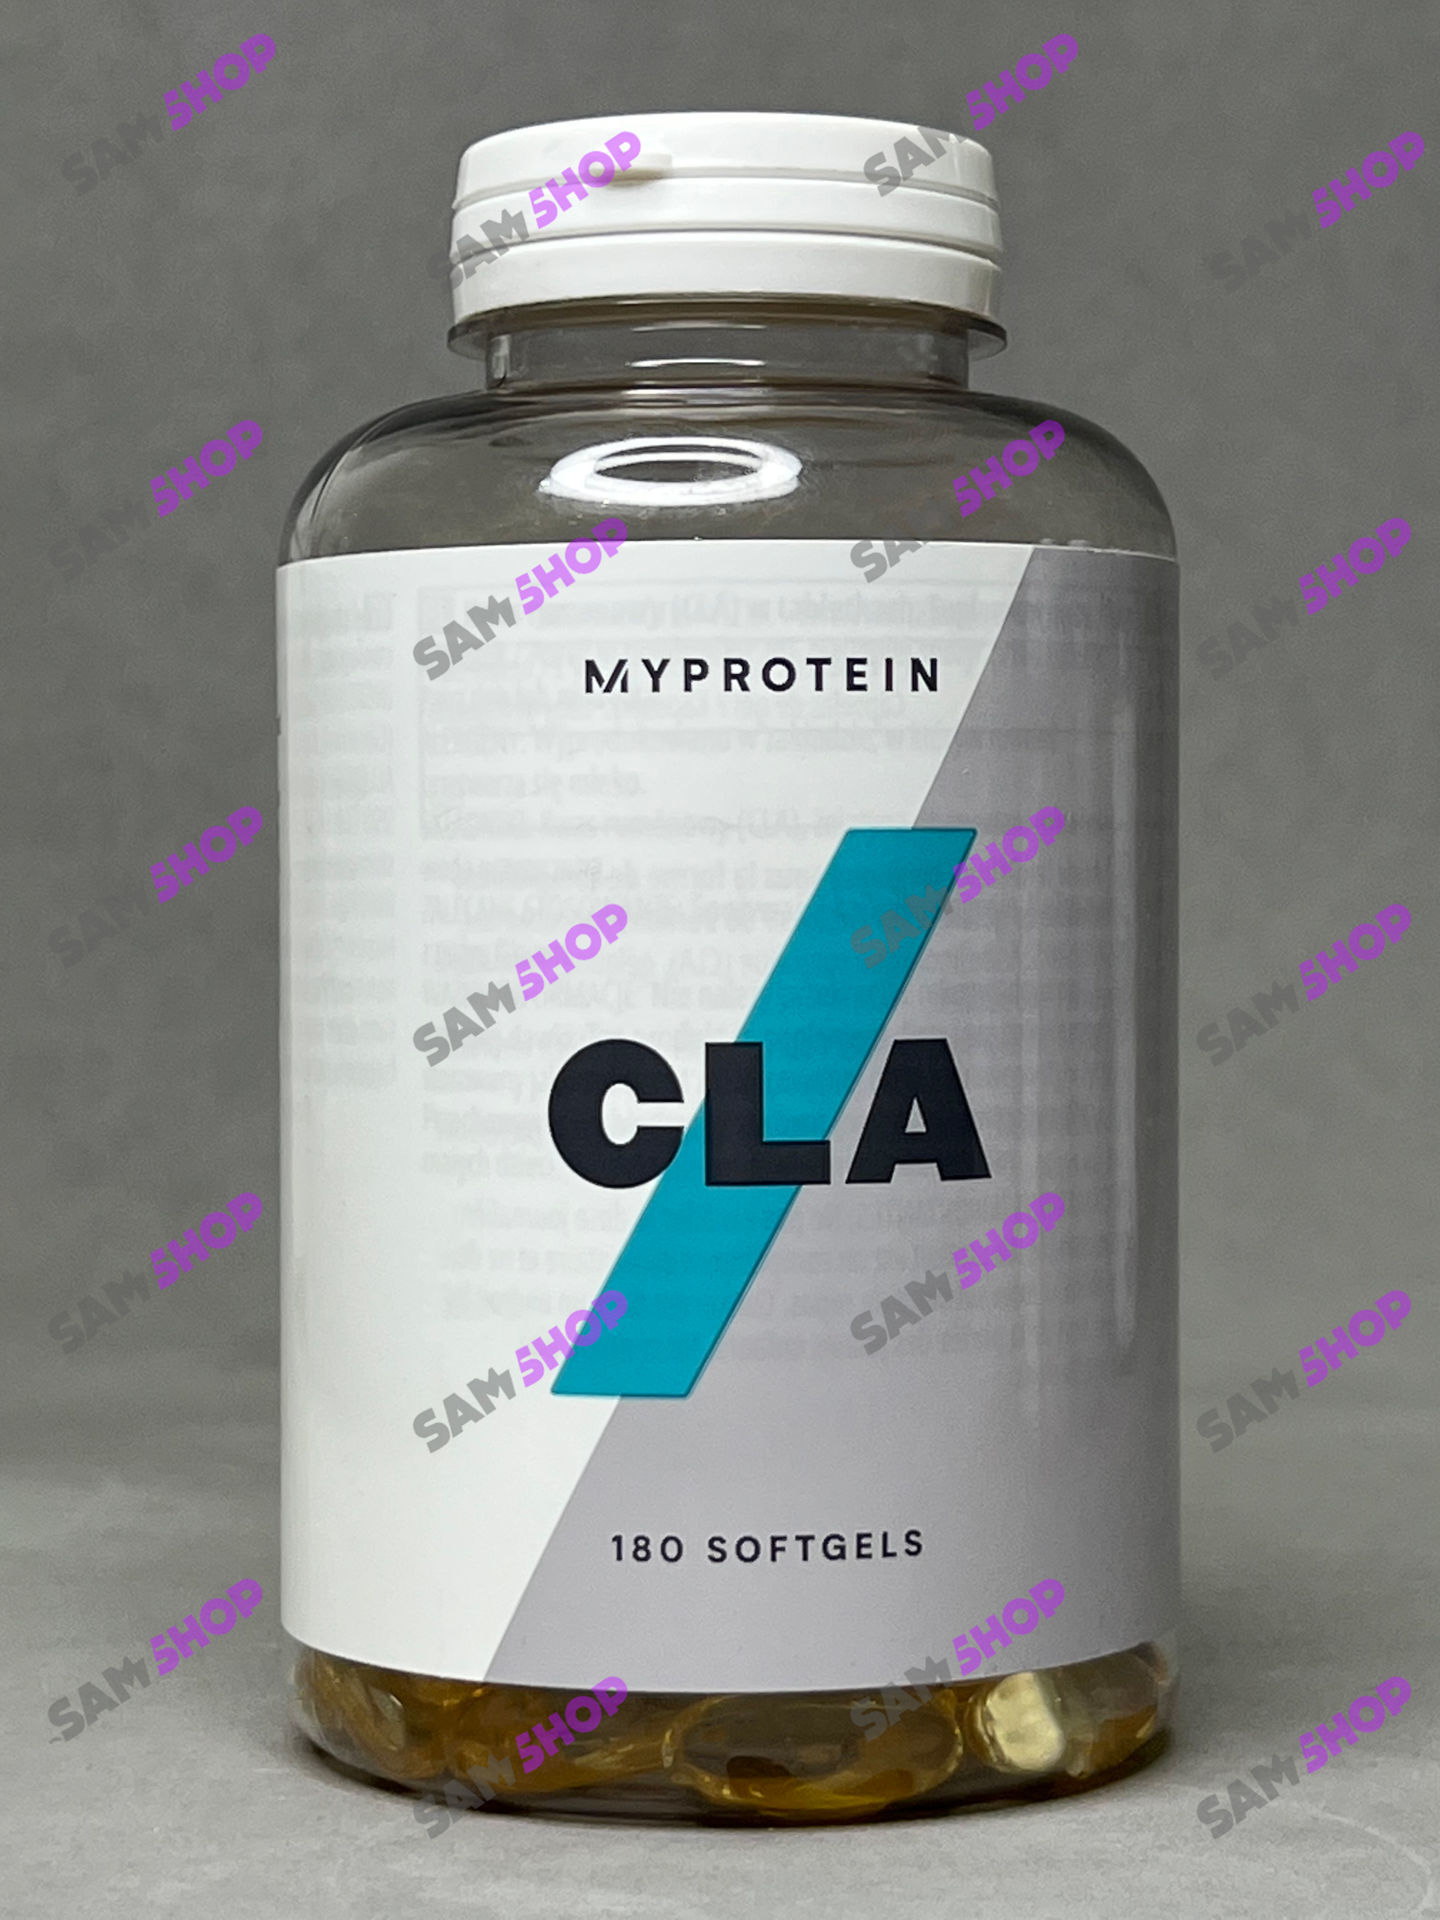 سی ال ای مای پروتئین - Myprotoein CLA